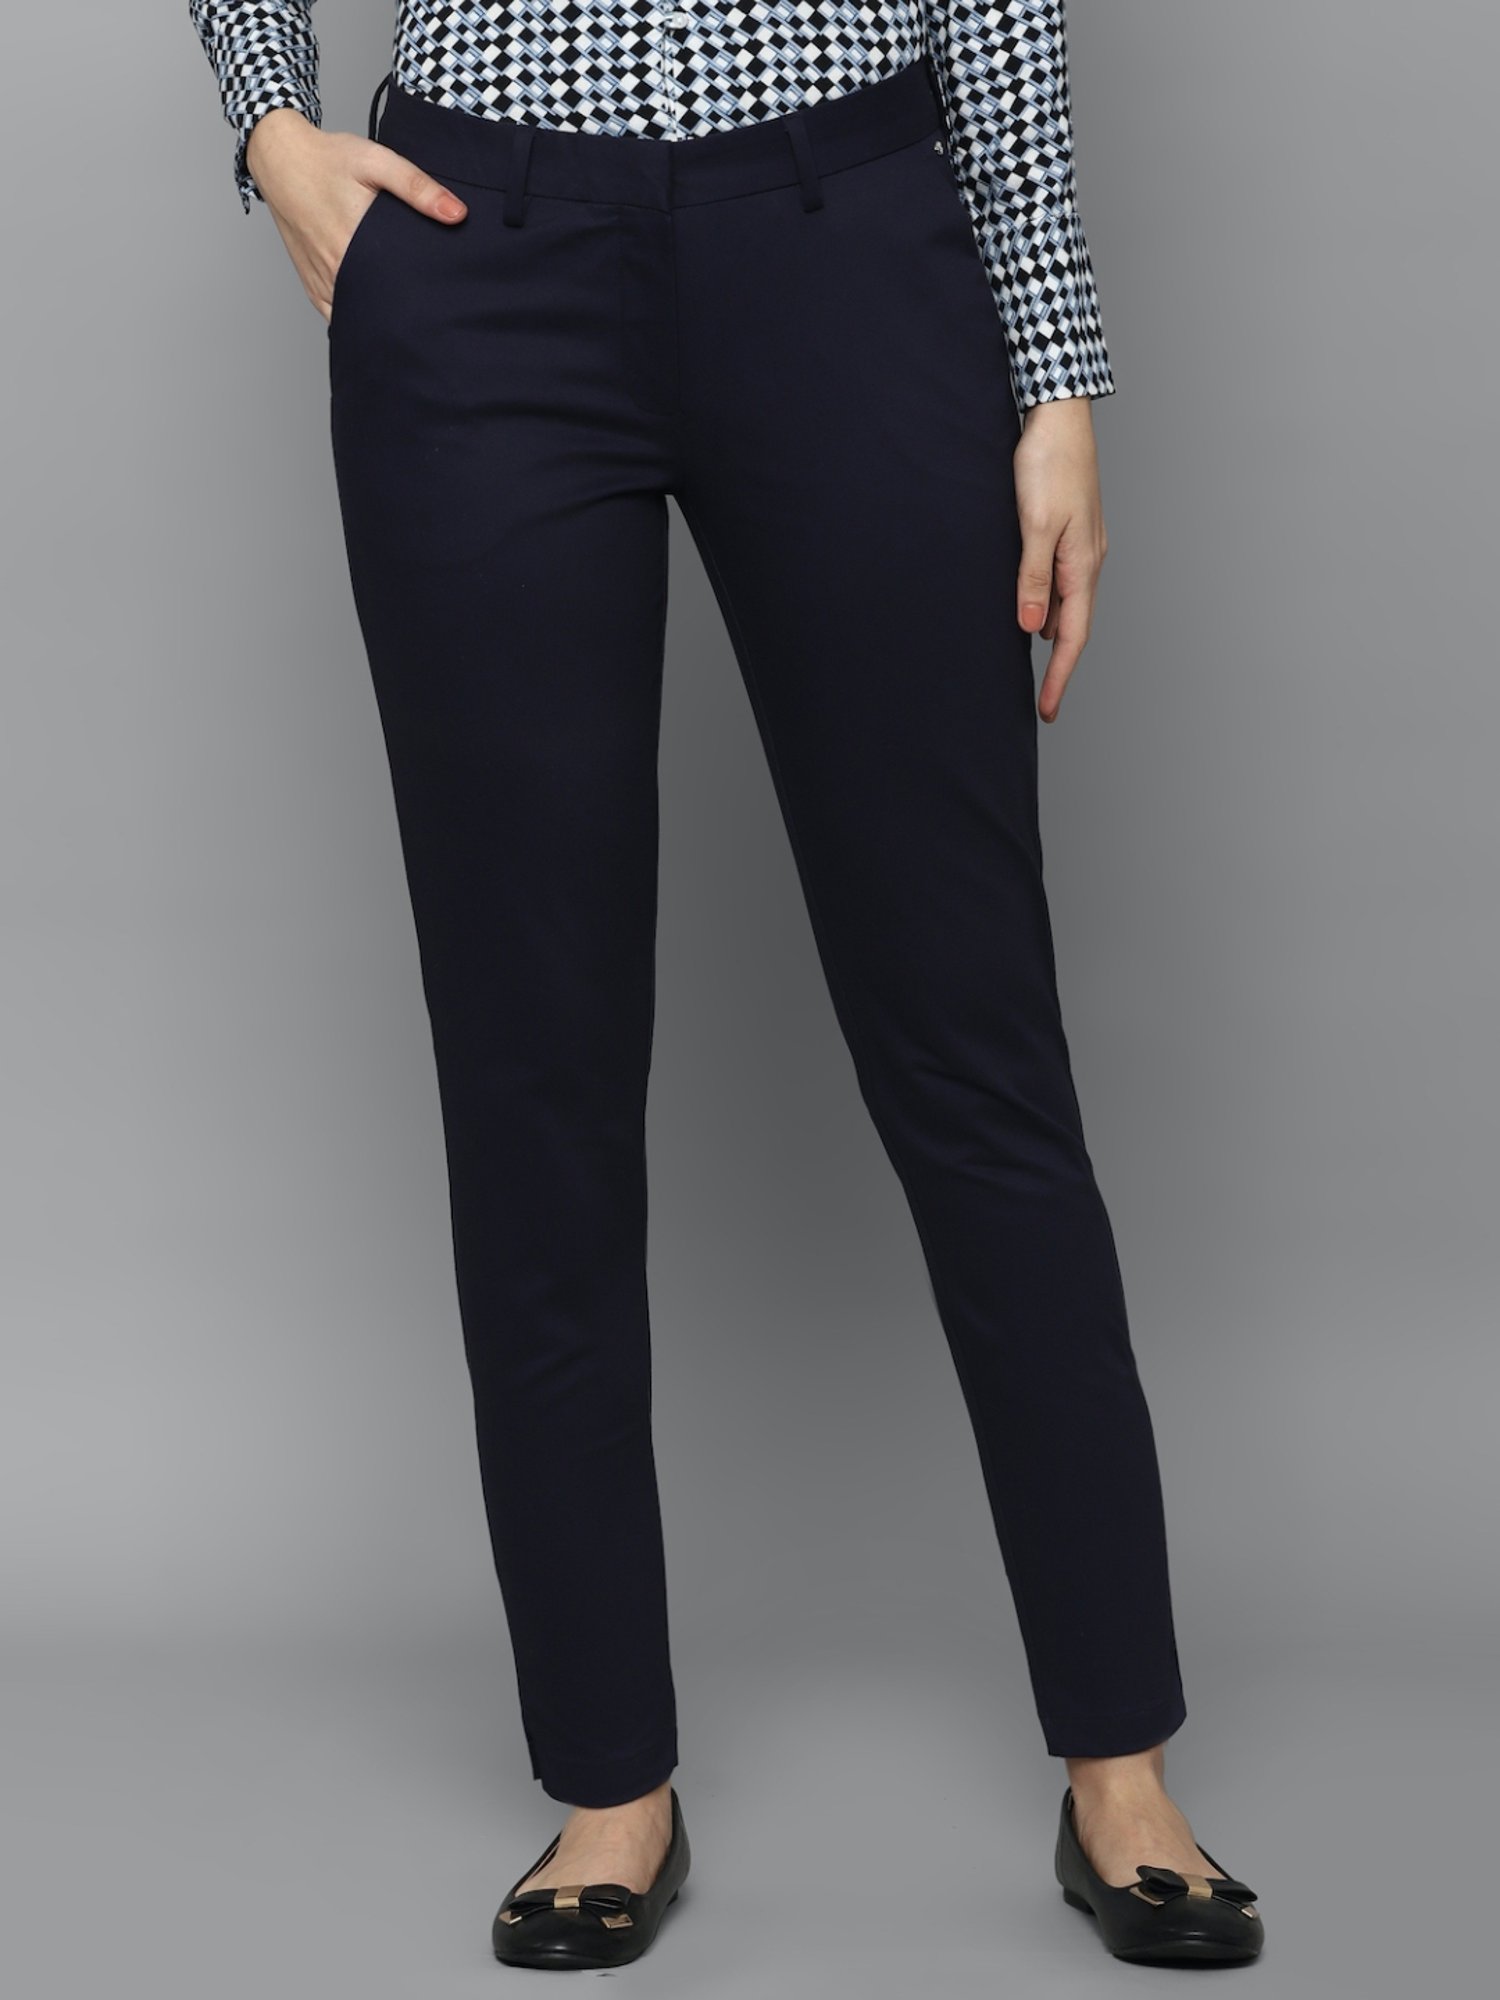 Buy Black Trousers  Pants for Women by ALLEN SOLLY Online  Ajiocom